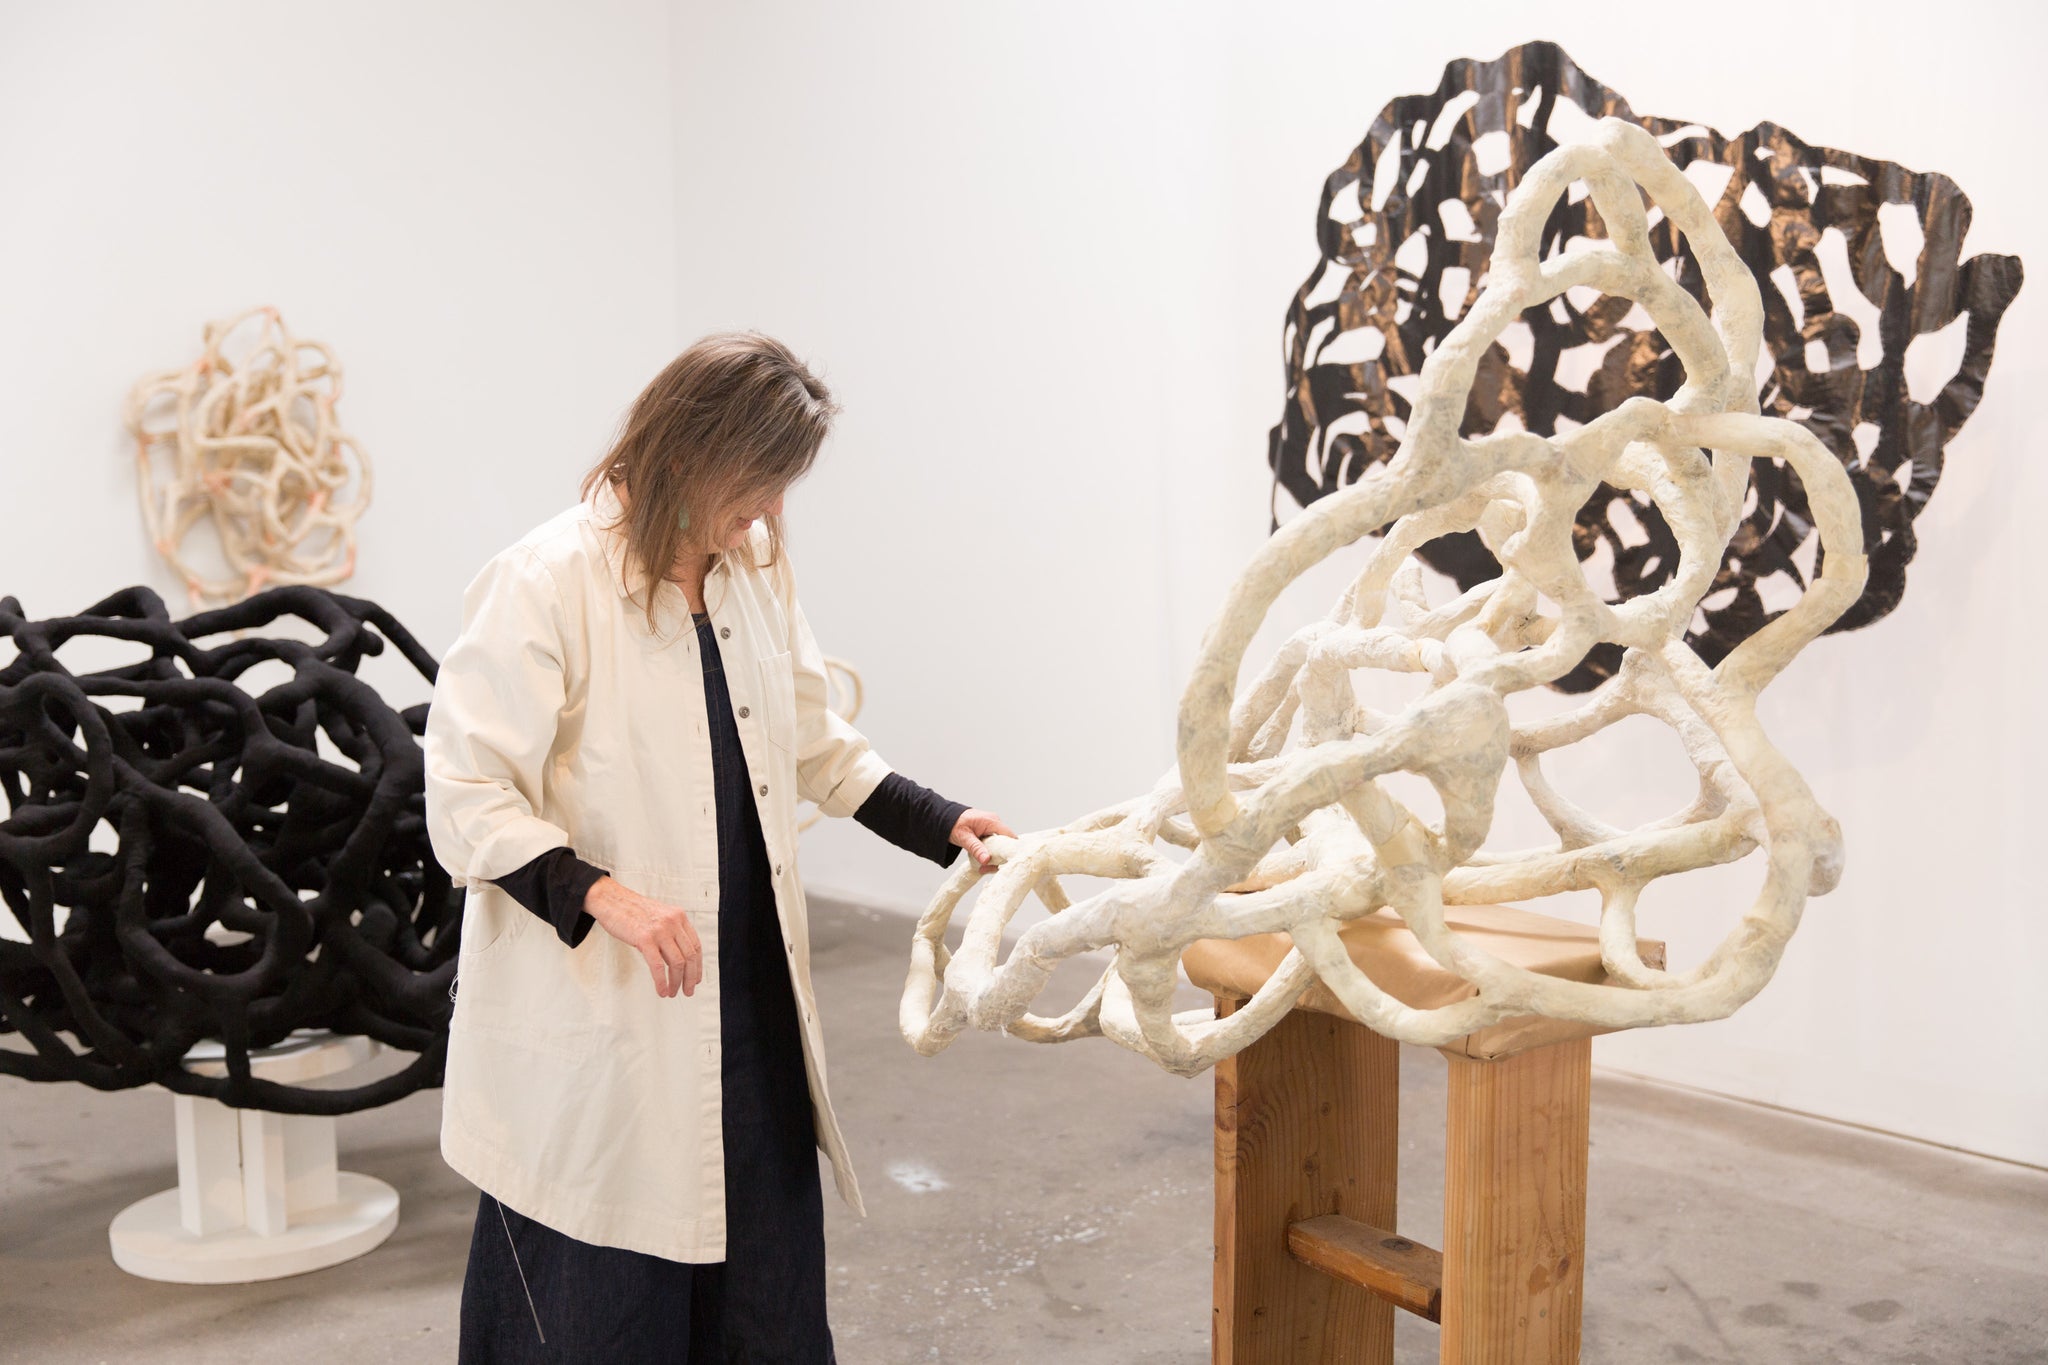 artist, Laura Cooper, touching her sculpture